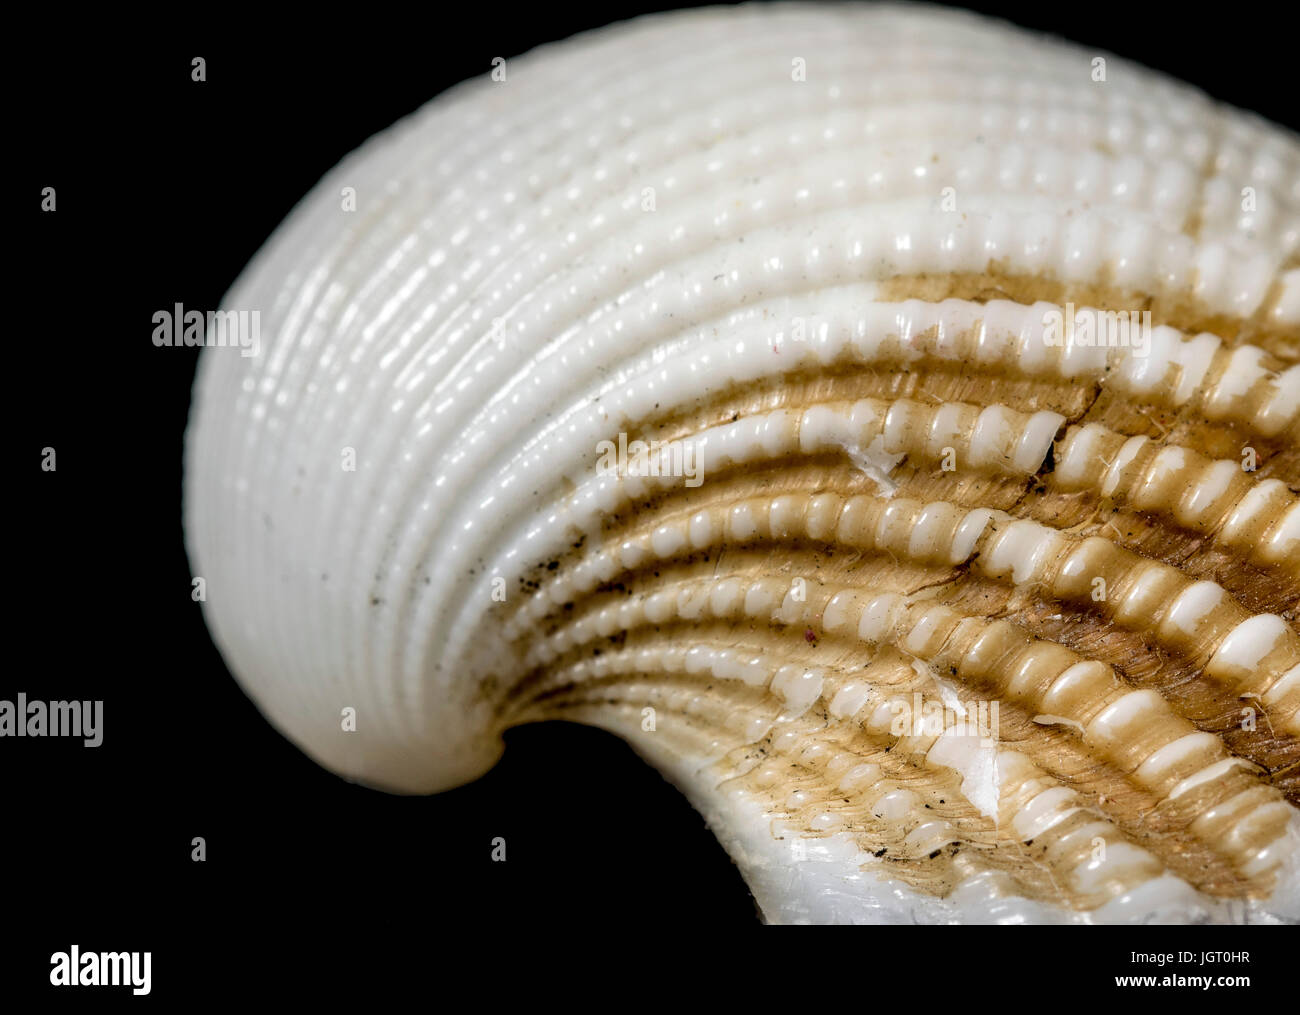 Sea Shell spirale spirale du nombre d'or sur fond noir, récolte, jaune et blanc, avec une petite fissure sur la coque, les détails et la texture Banque D'Images